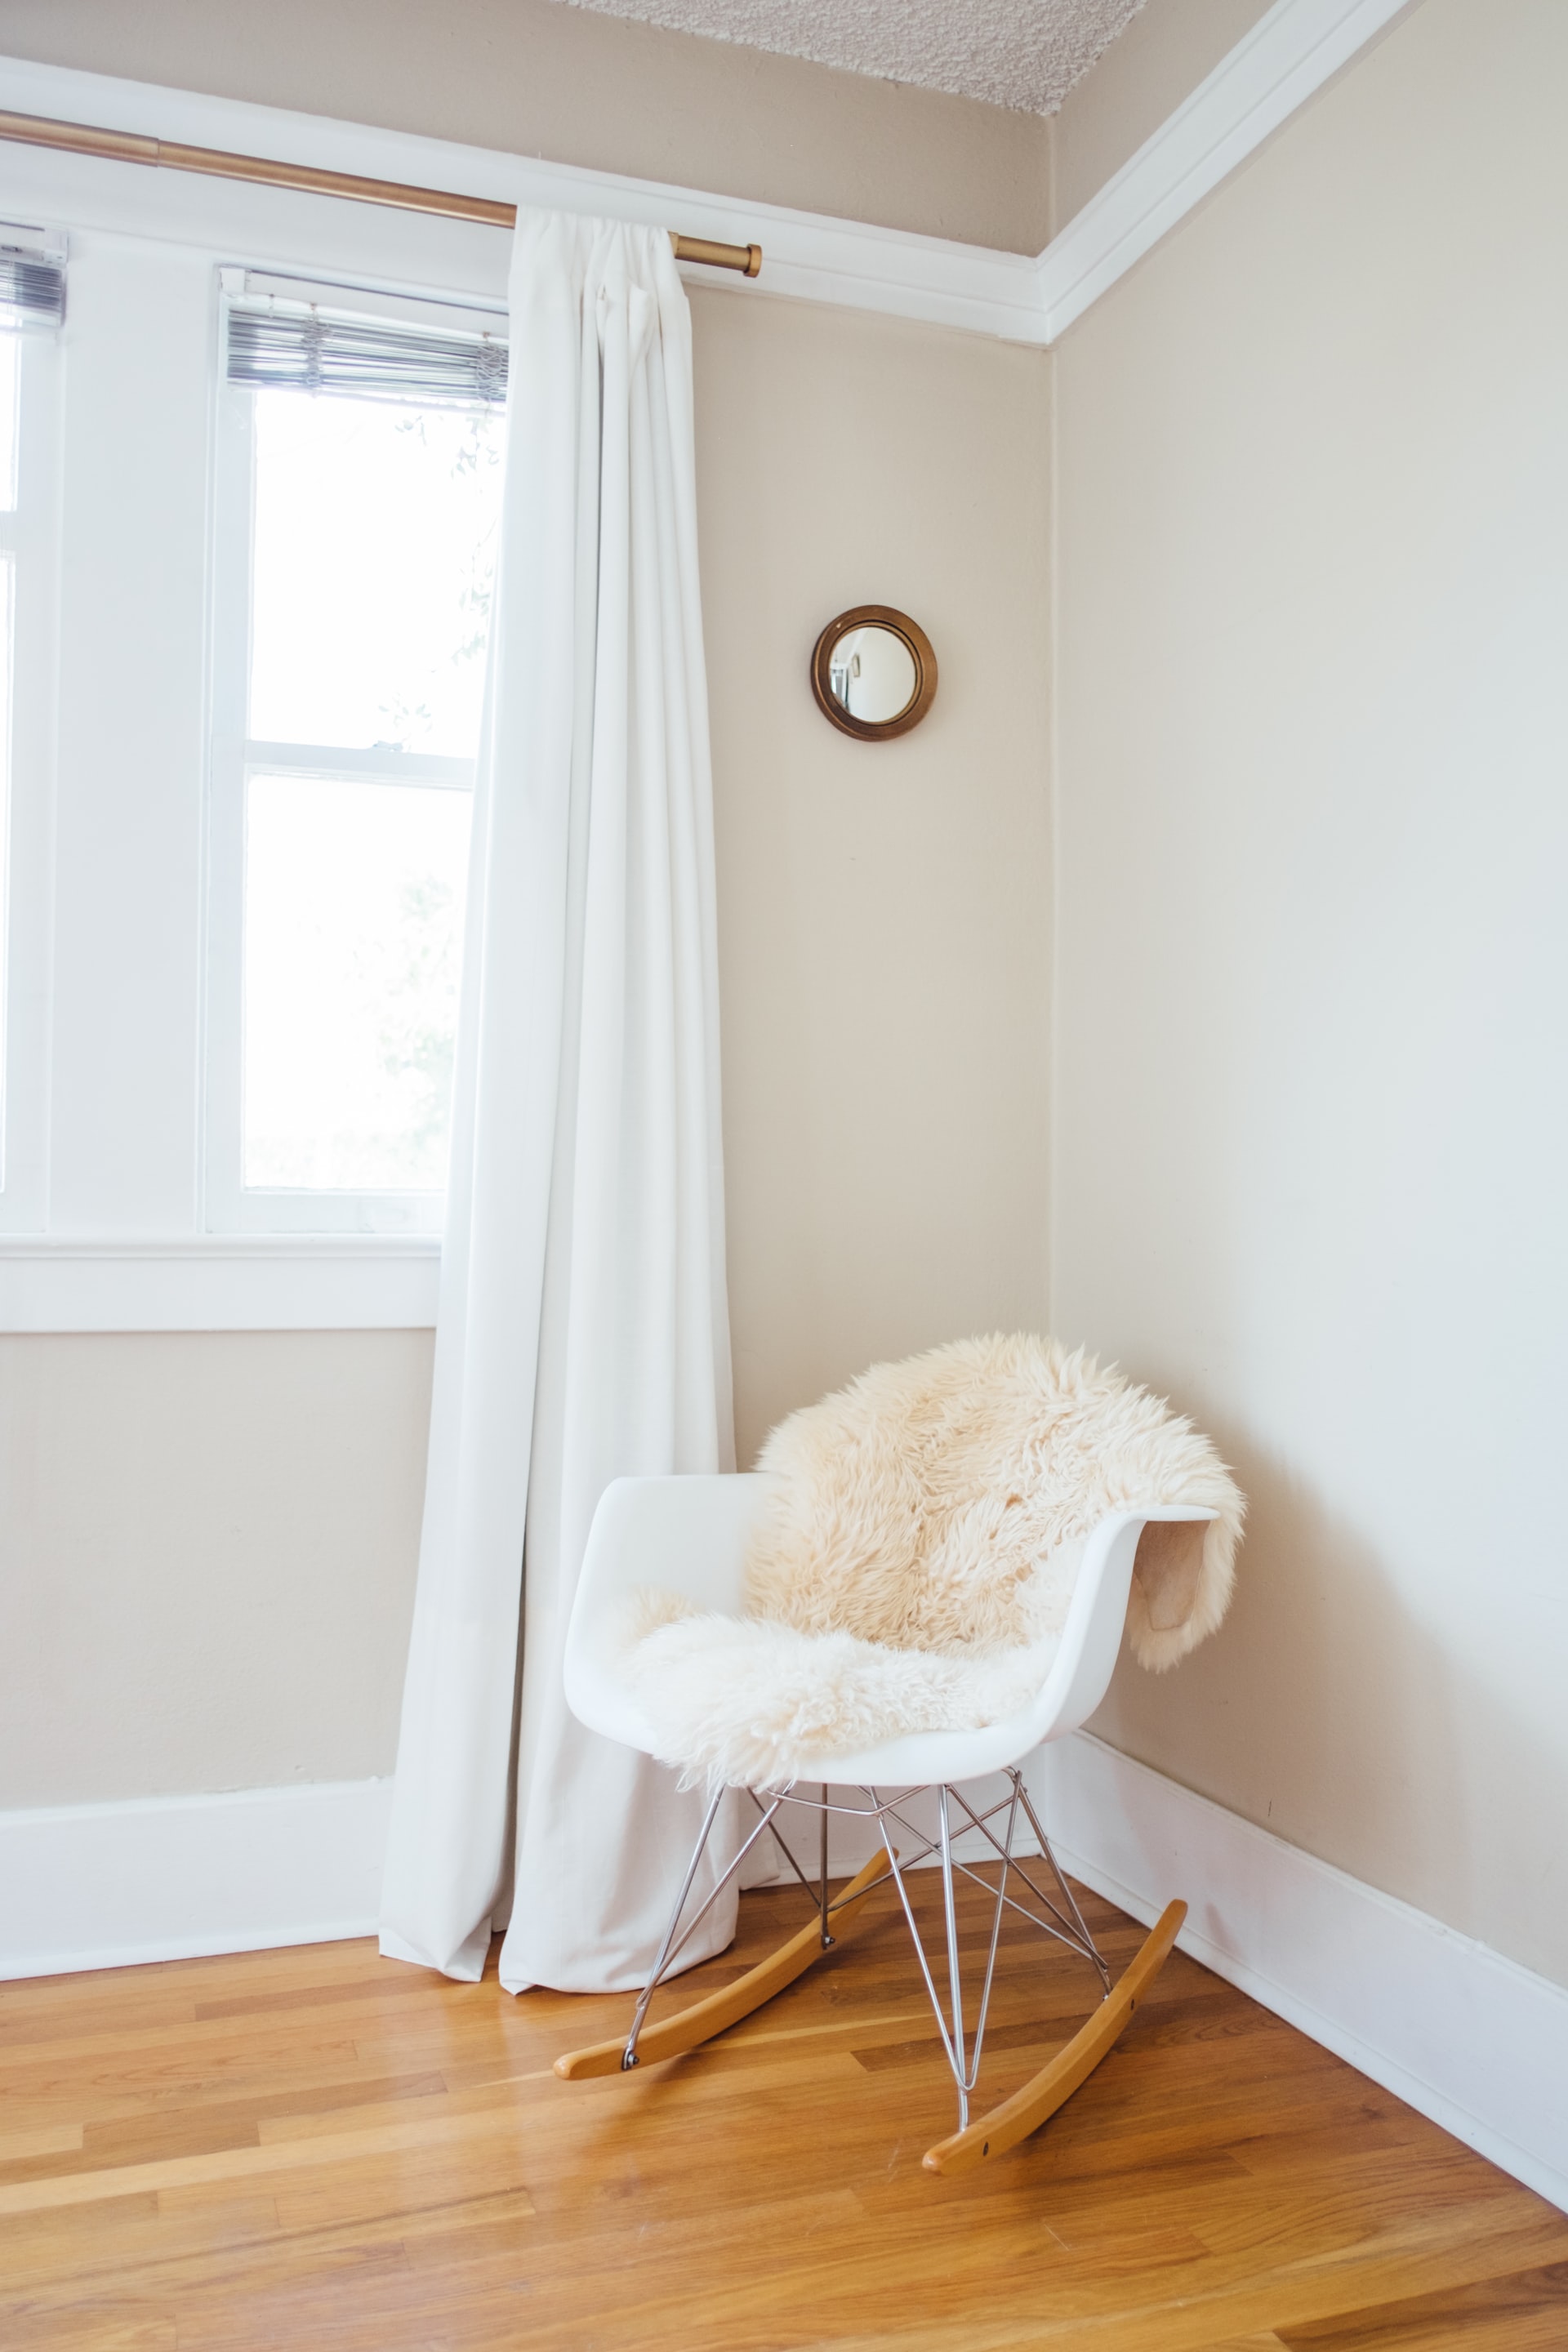 A large open window in a beige minimalist room